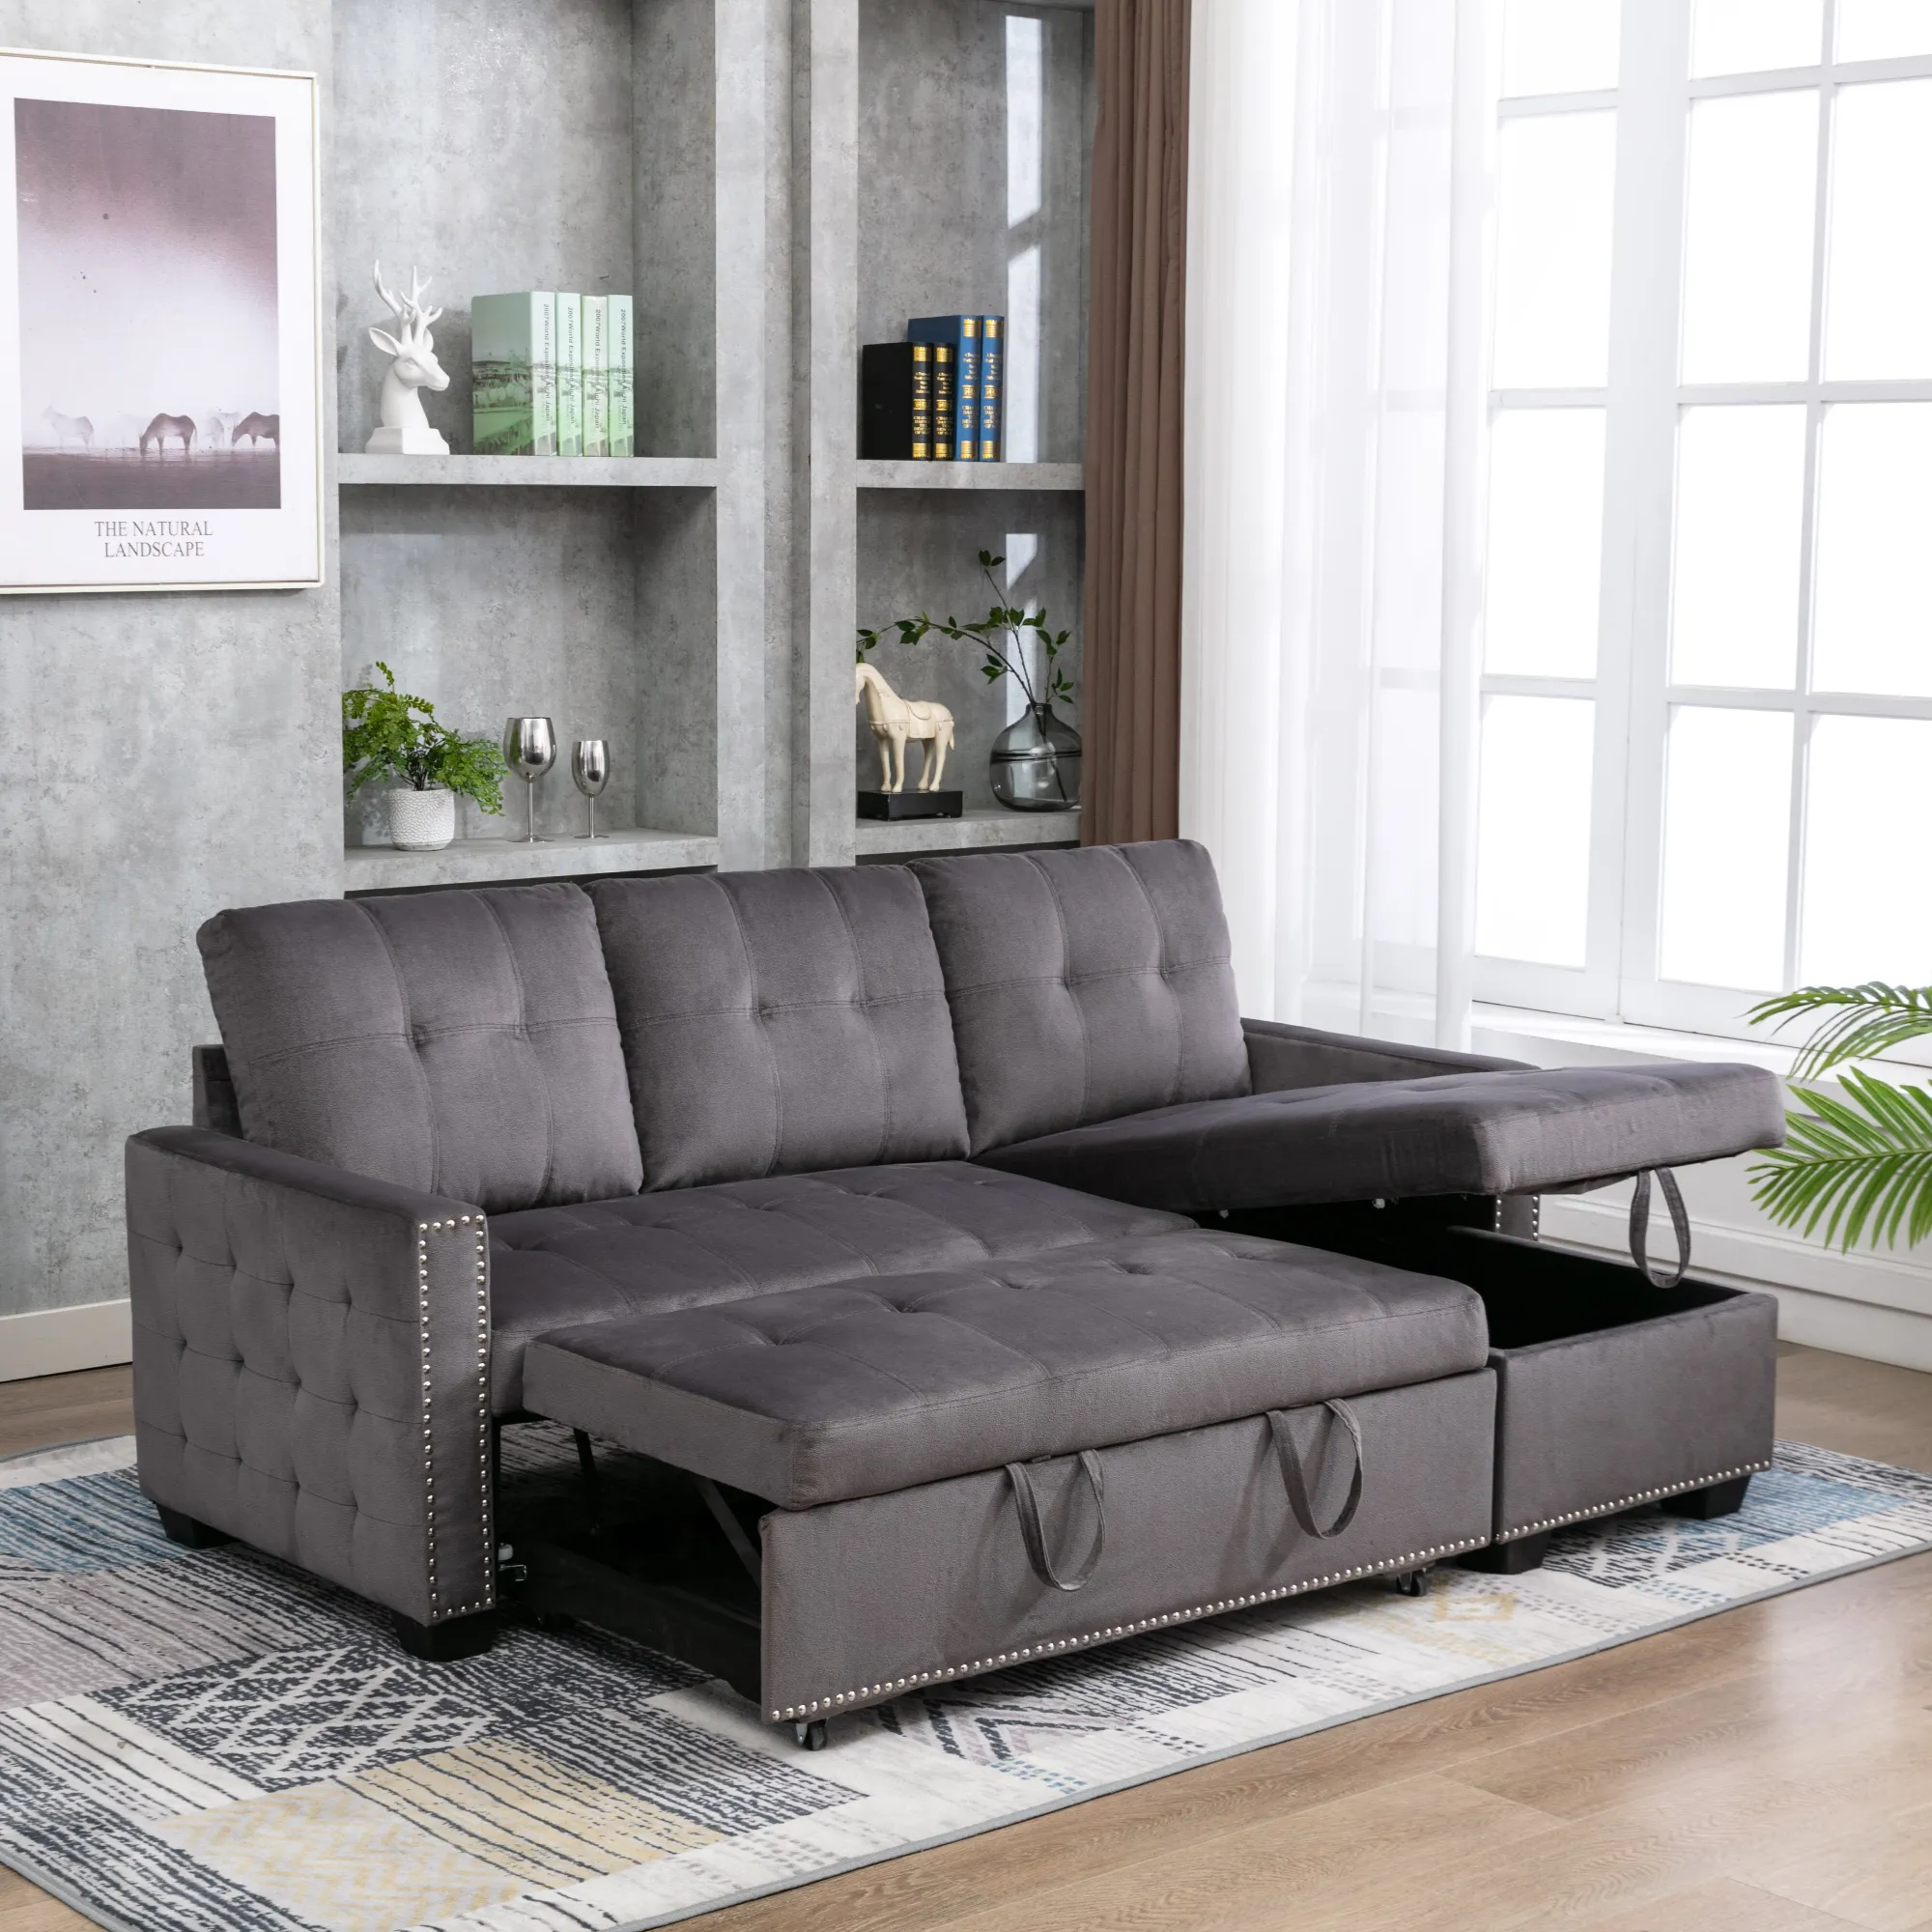 Sofá cama extraíble de diseño moderno, muebles populares para sala de estar